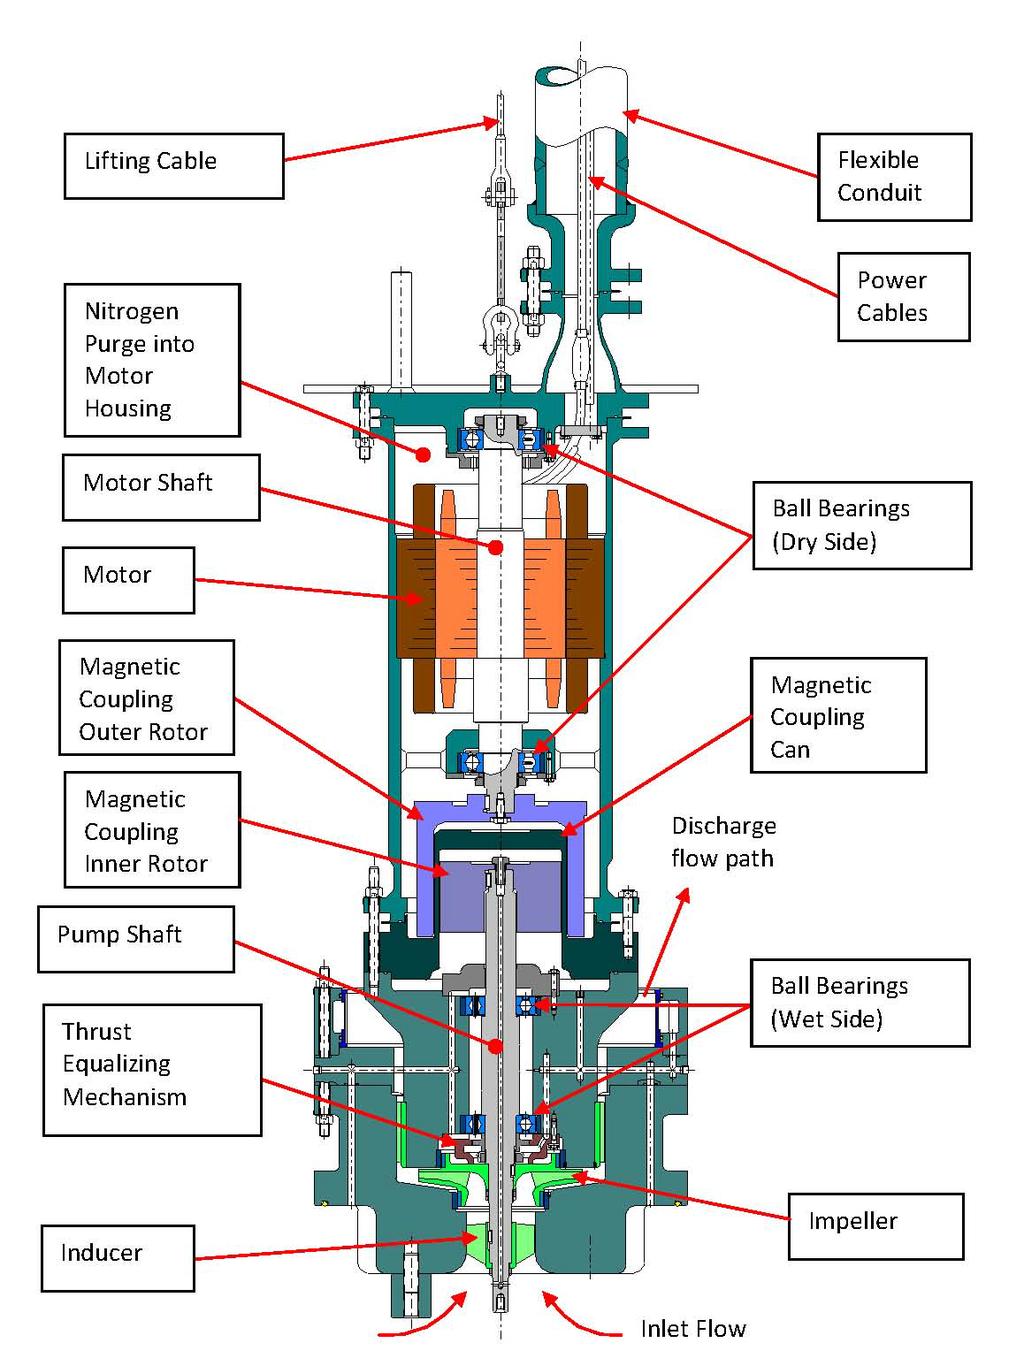 Figure 2: Pump Design